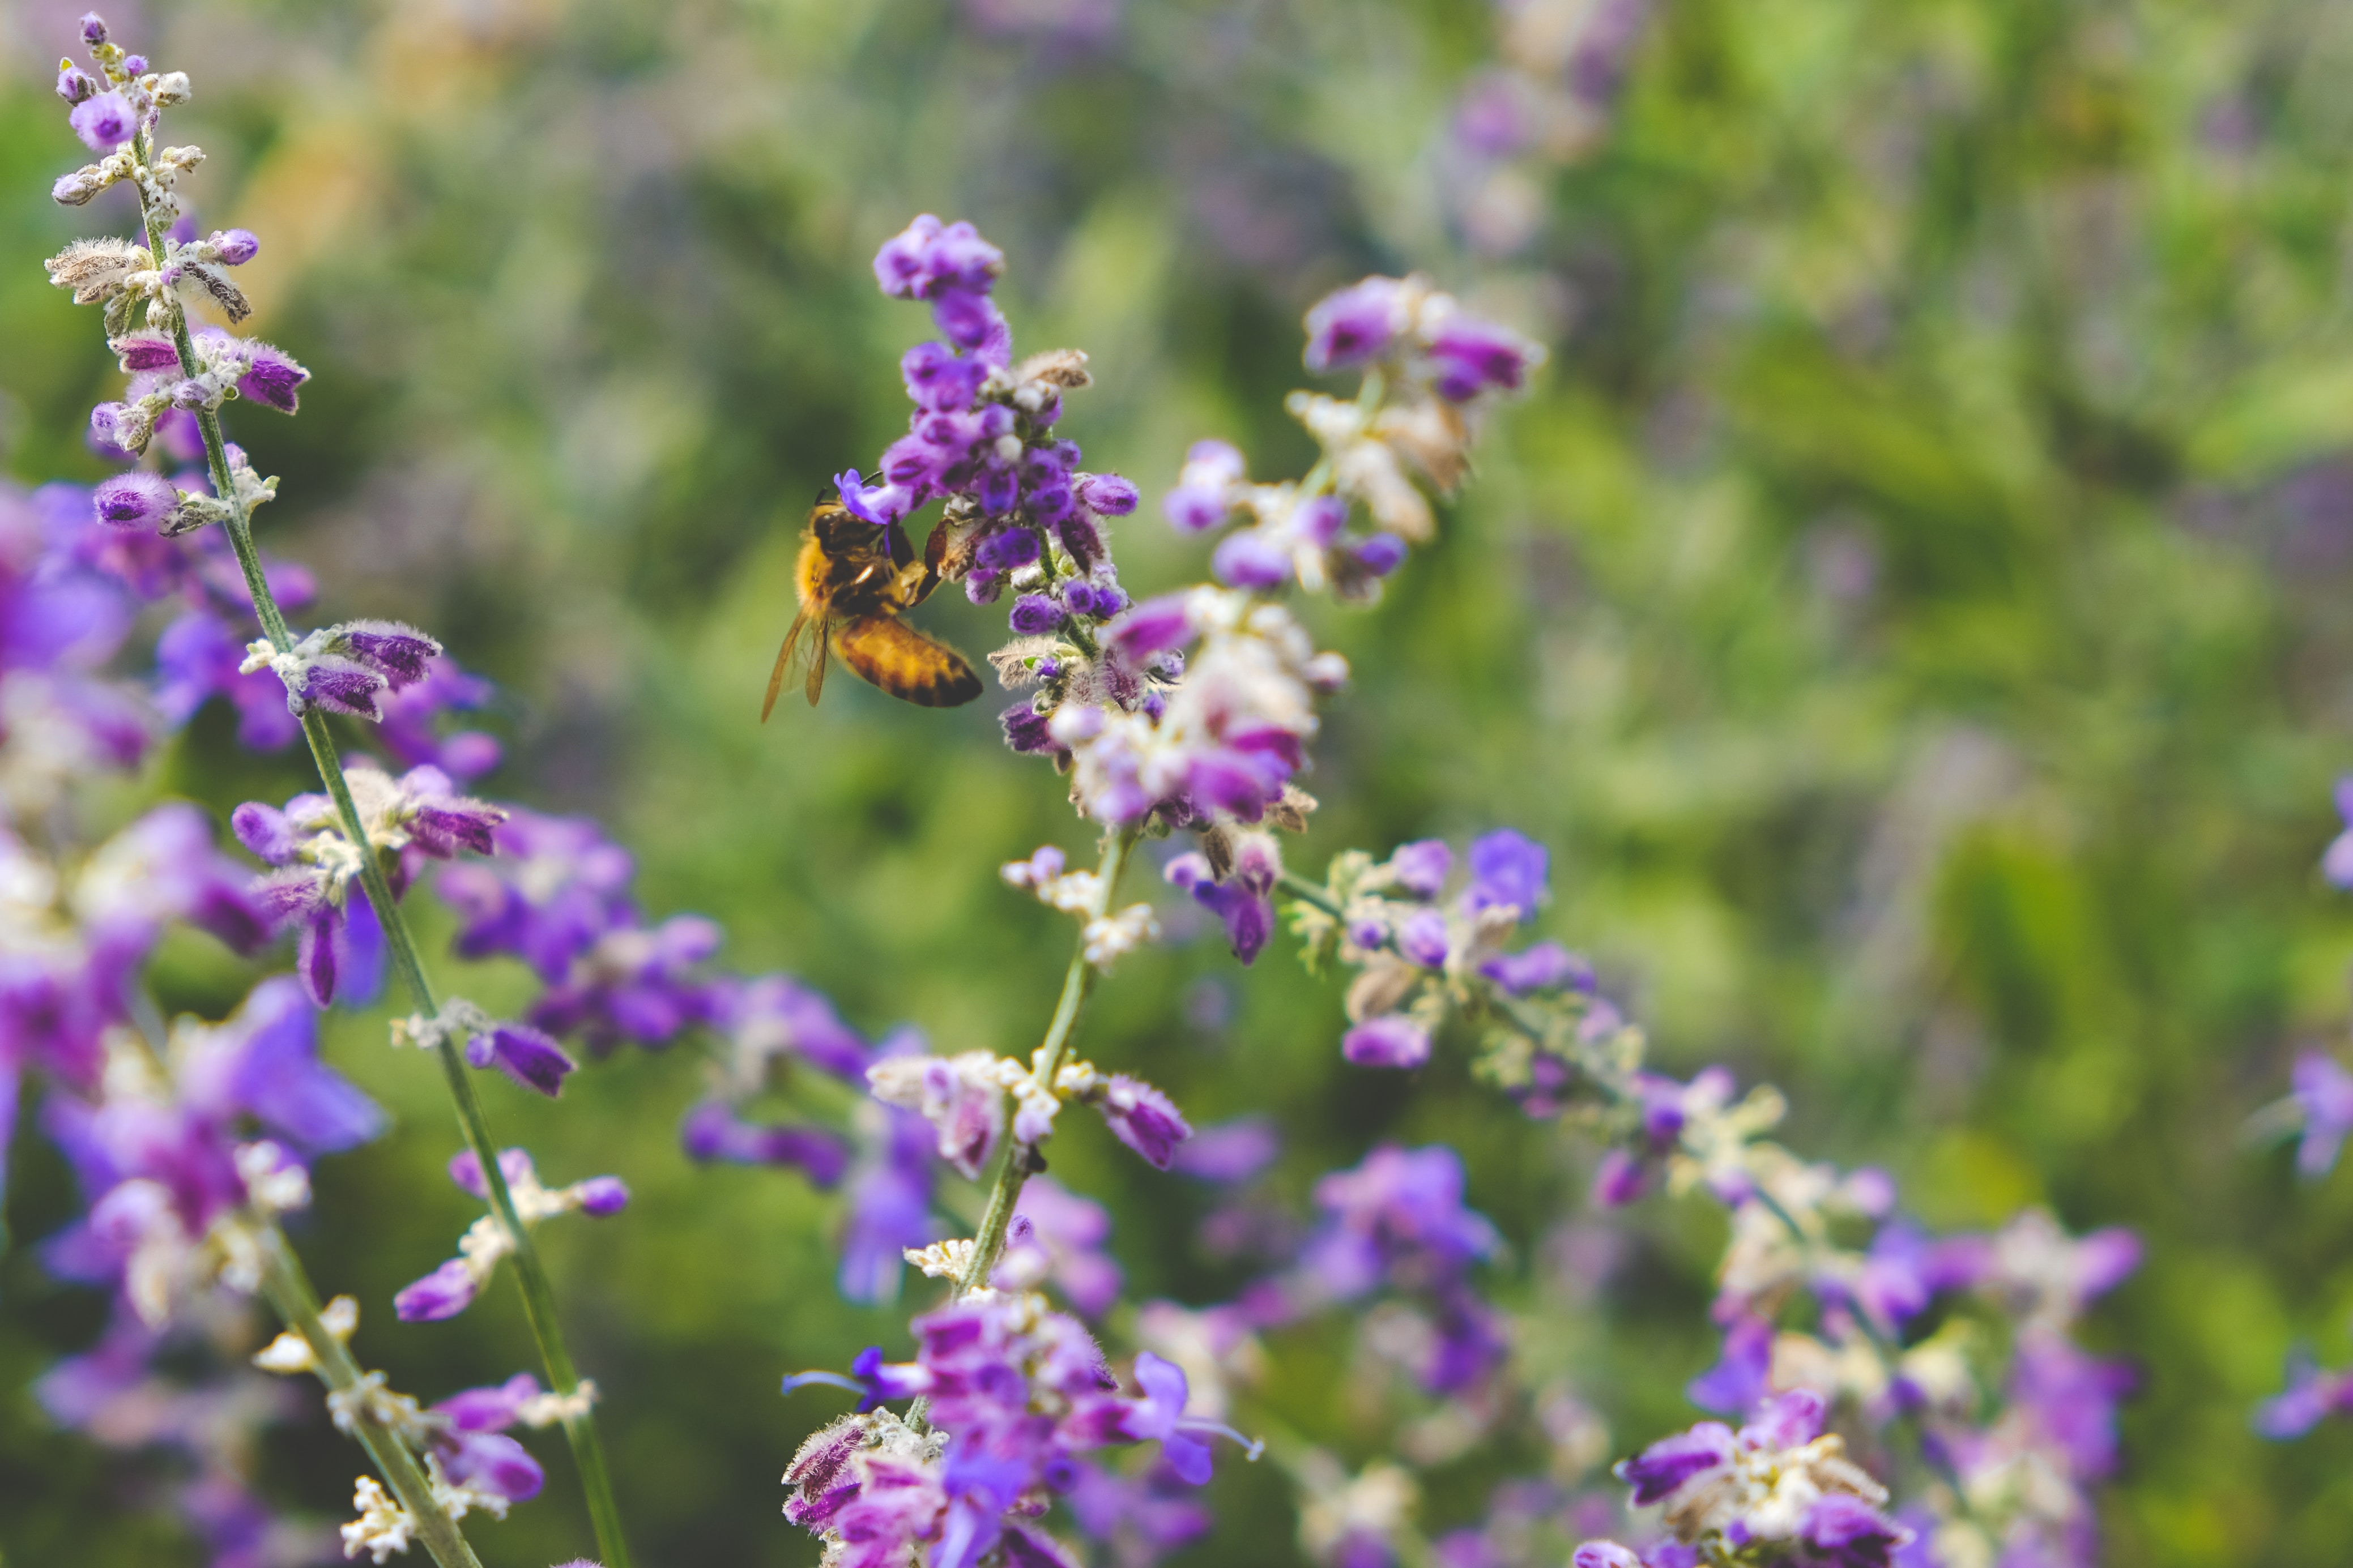 A bee on purple flowers